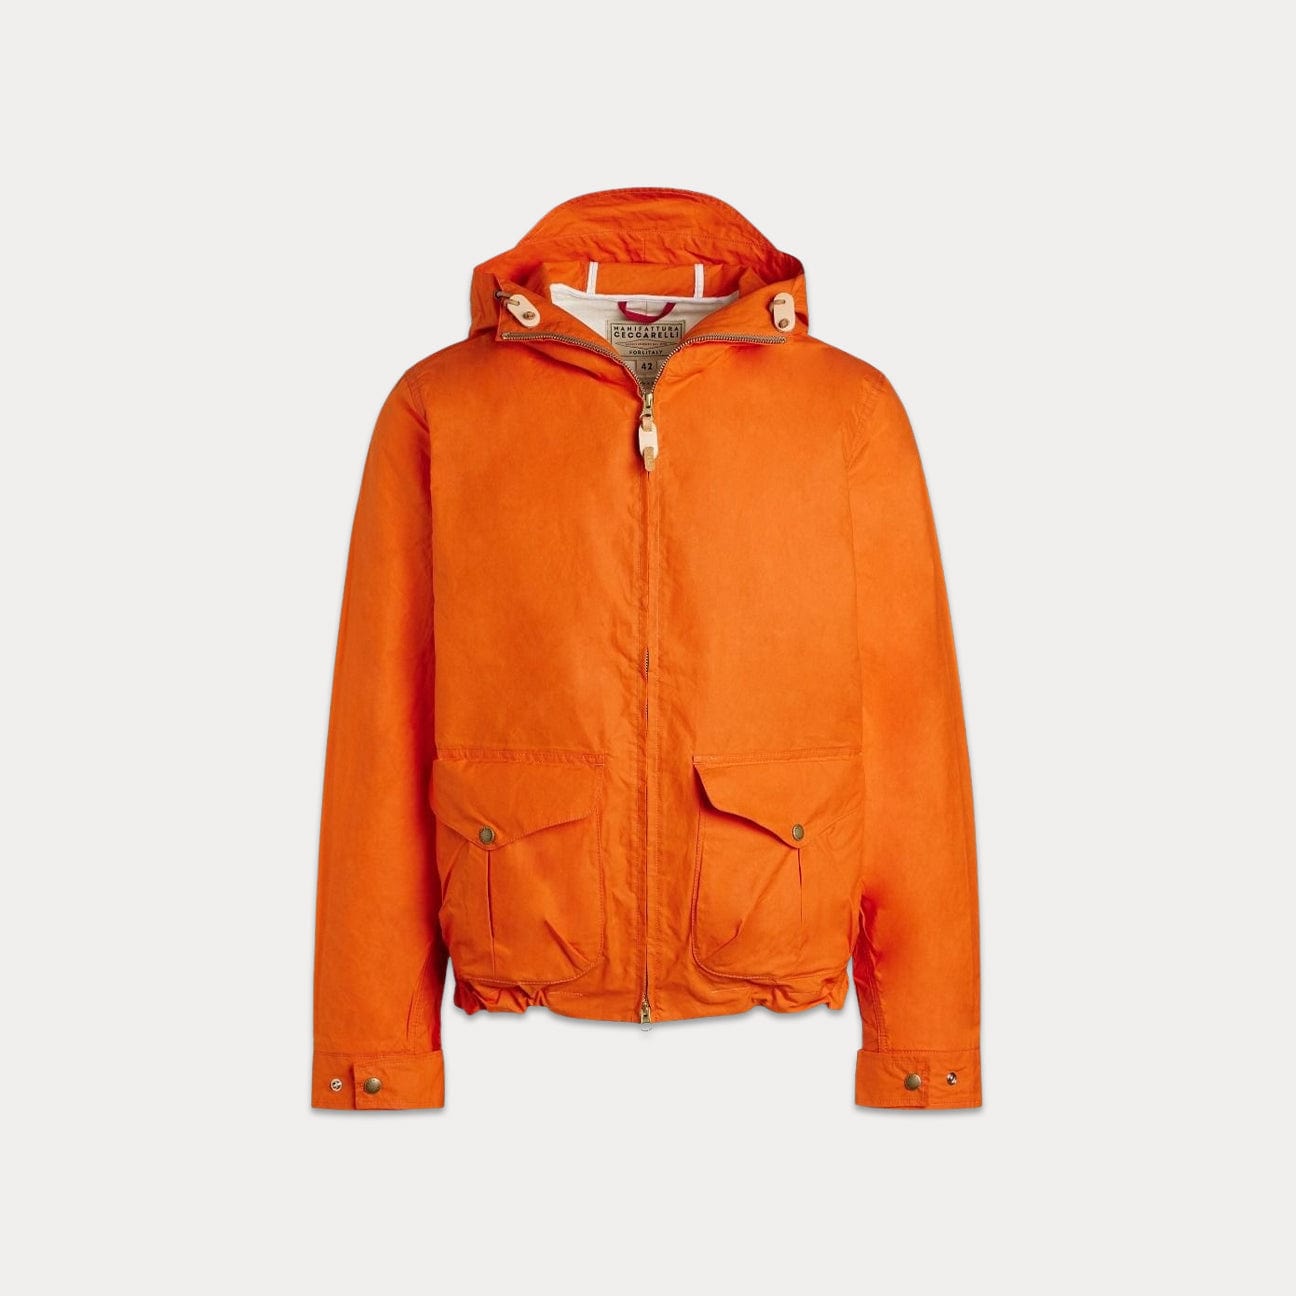 MANIFATTURA CECCARELLI Giubbotto Blazer Coat Hood Arancione